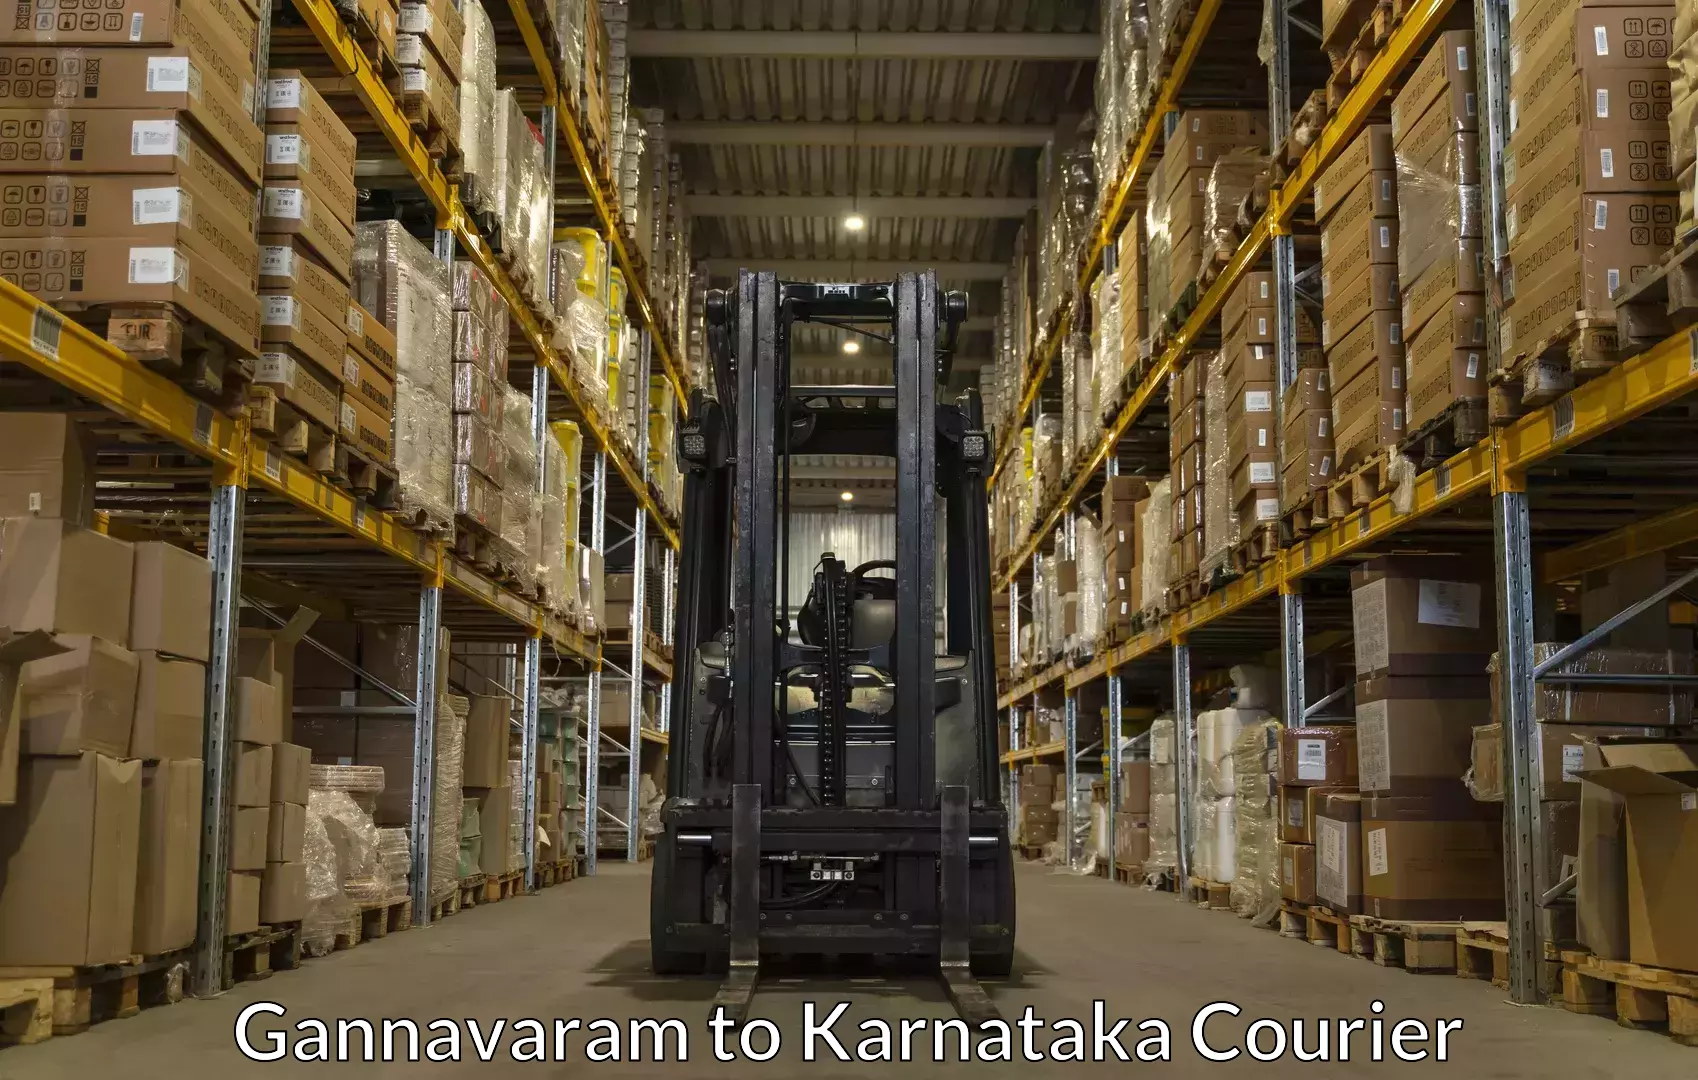 Furniture relocation experts Gannavaram to Mysore